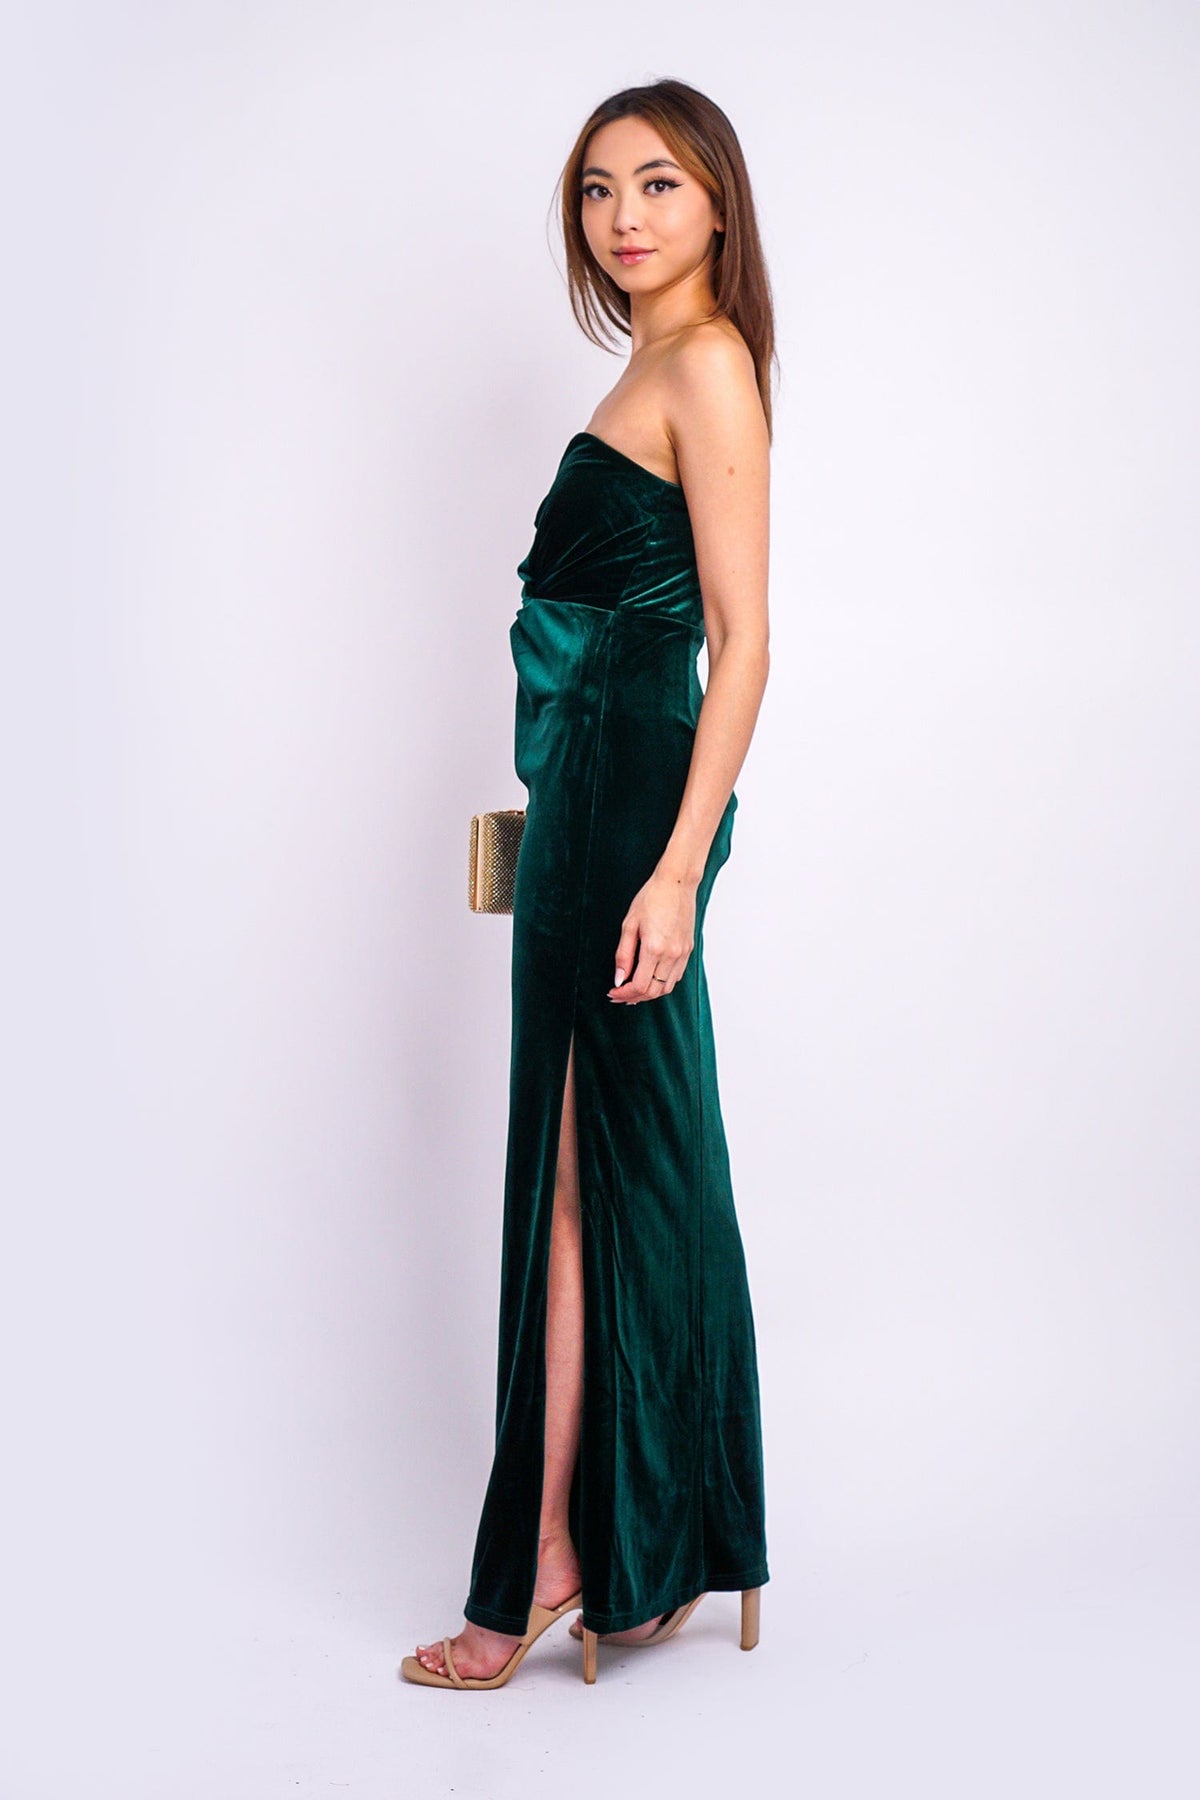 DCD GOWNS Emerald Strapless Sweetheart Velvet Gown